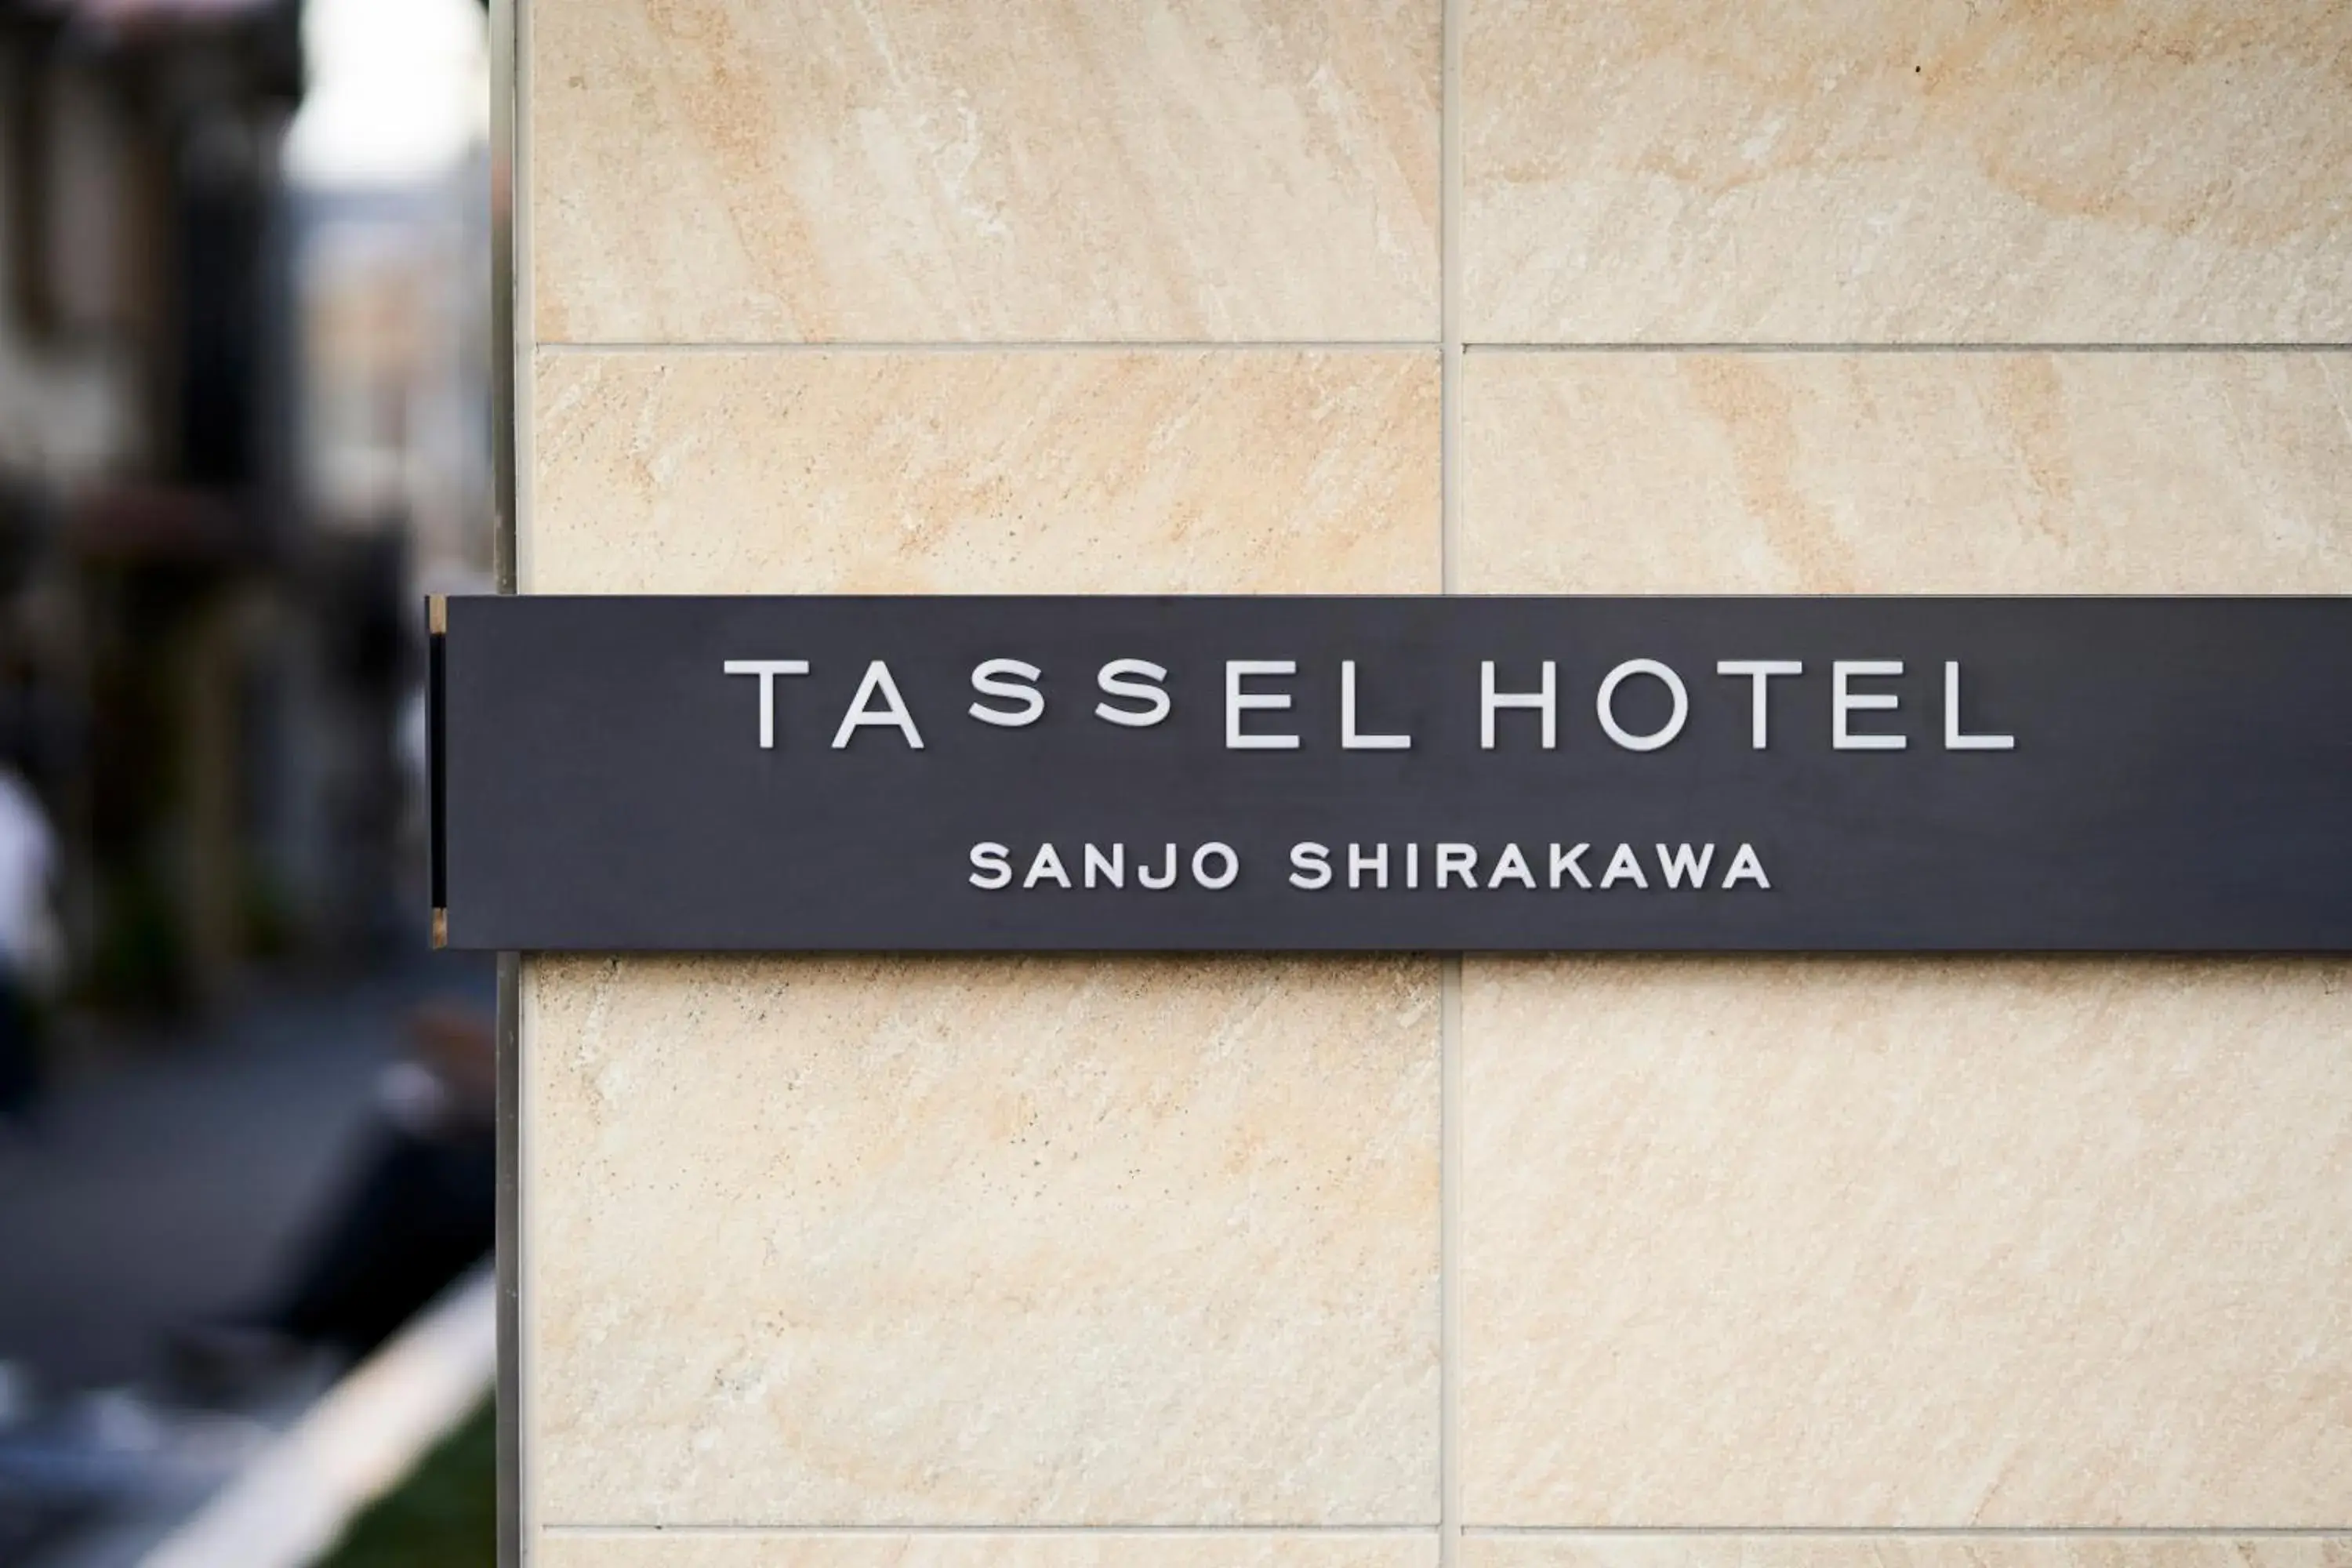 Property building in Tassel Hotel Sanjo Shirakawa